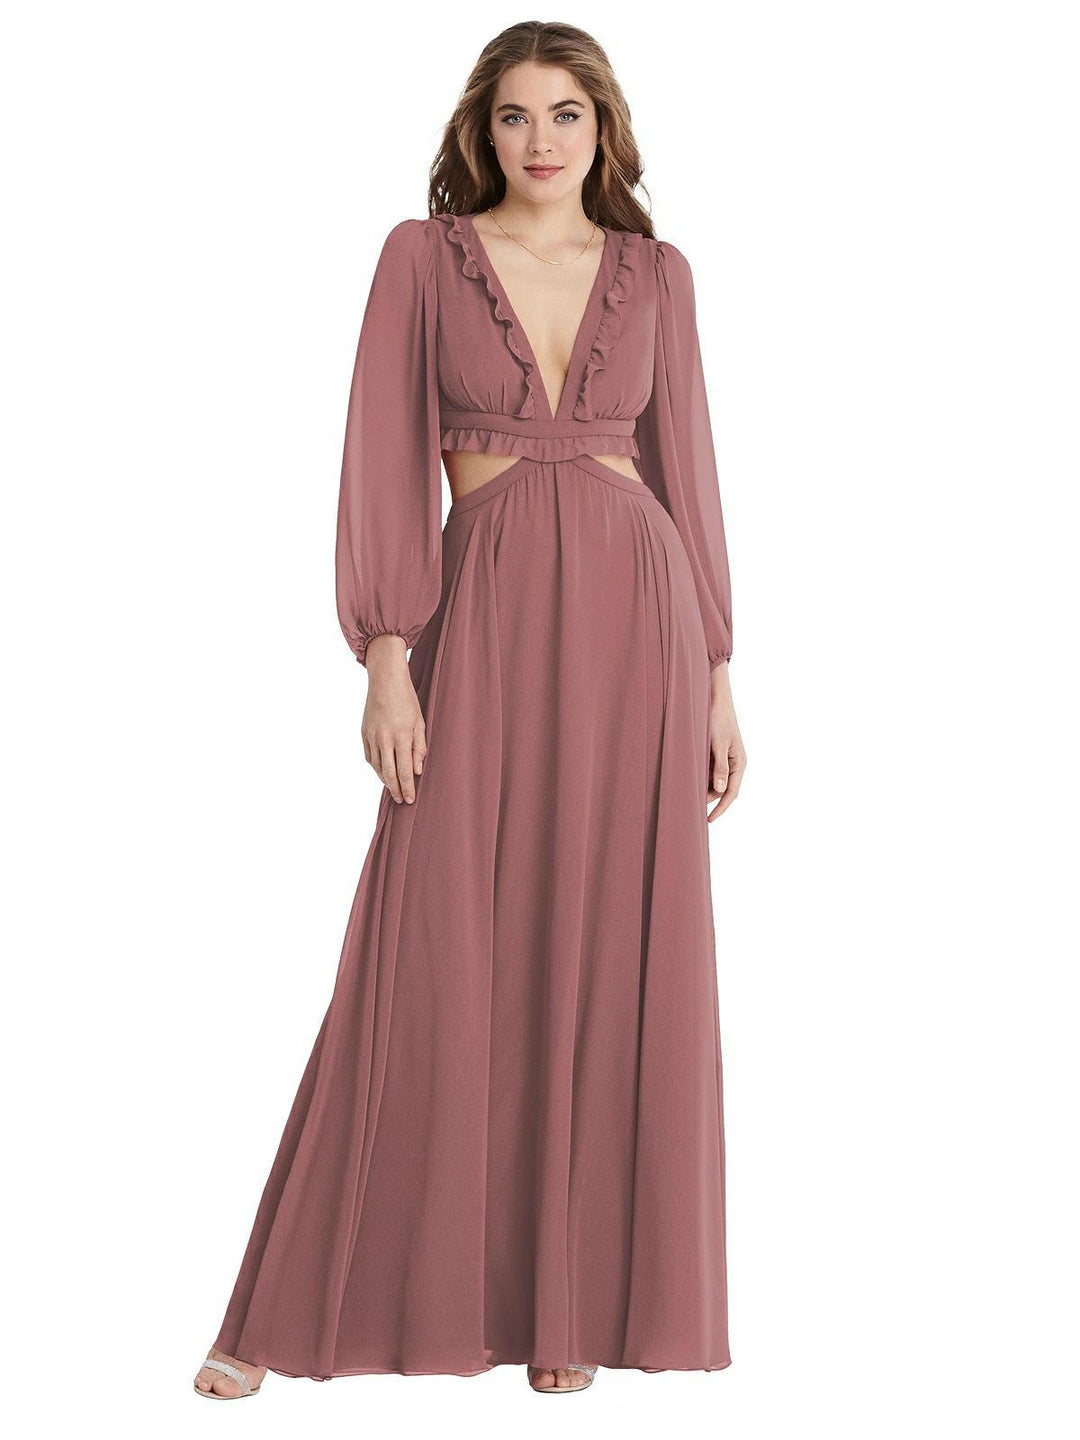 Bishop Sleeve Ruffled Chiffon Cutout Maxi Dress Style LB015 Size 12